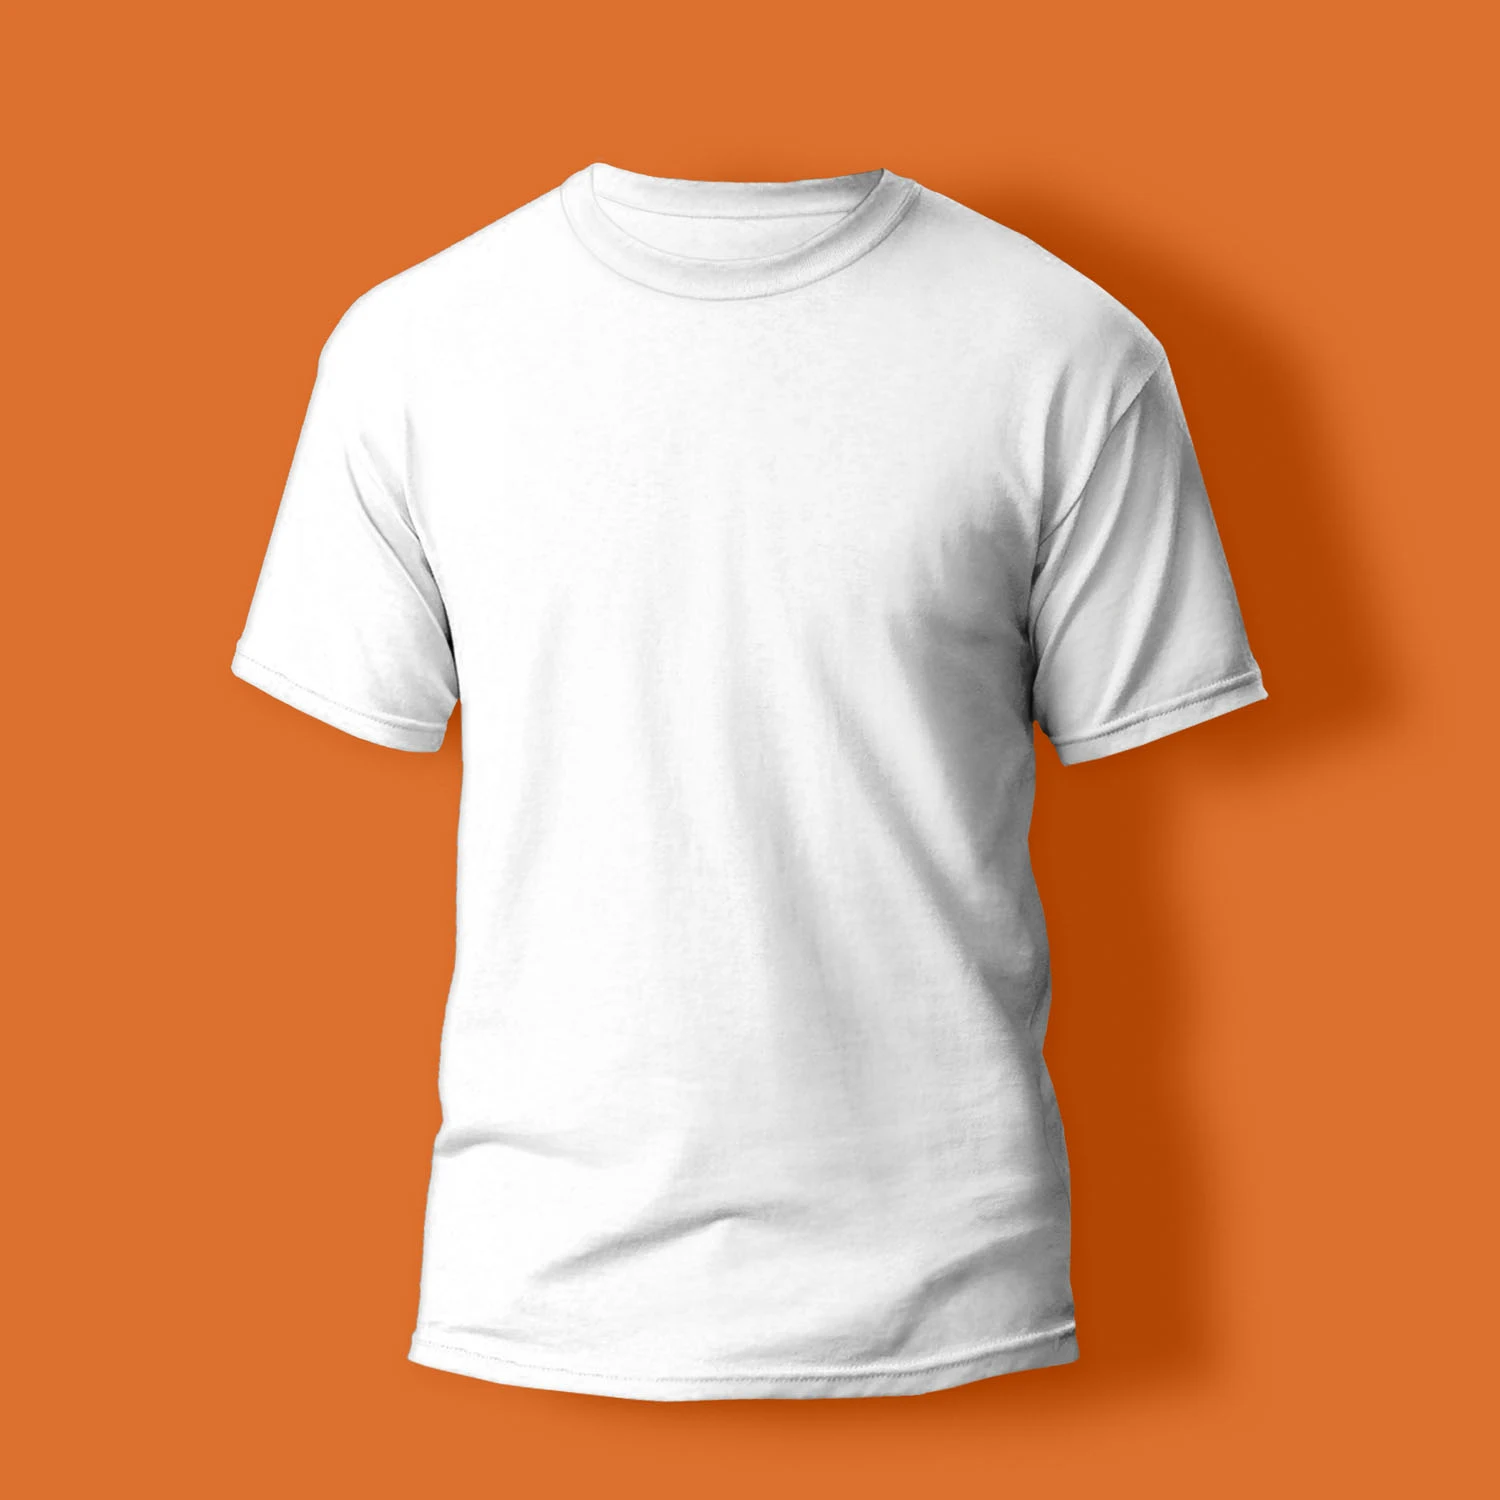 সাদা টি শার্ট ছবি - নিউ টি শার্ট ডিজাইন 2022 - ছেলেদের টি শার্ট ডিজাইন - ছেলেদের টি শার্ট কালেকশন - Boys' t-shirts - NeotericIT.com